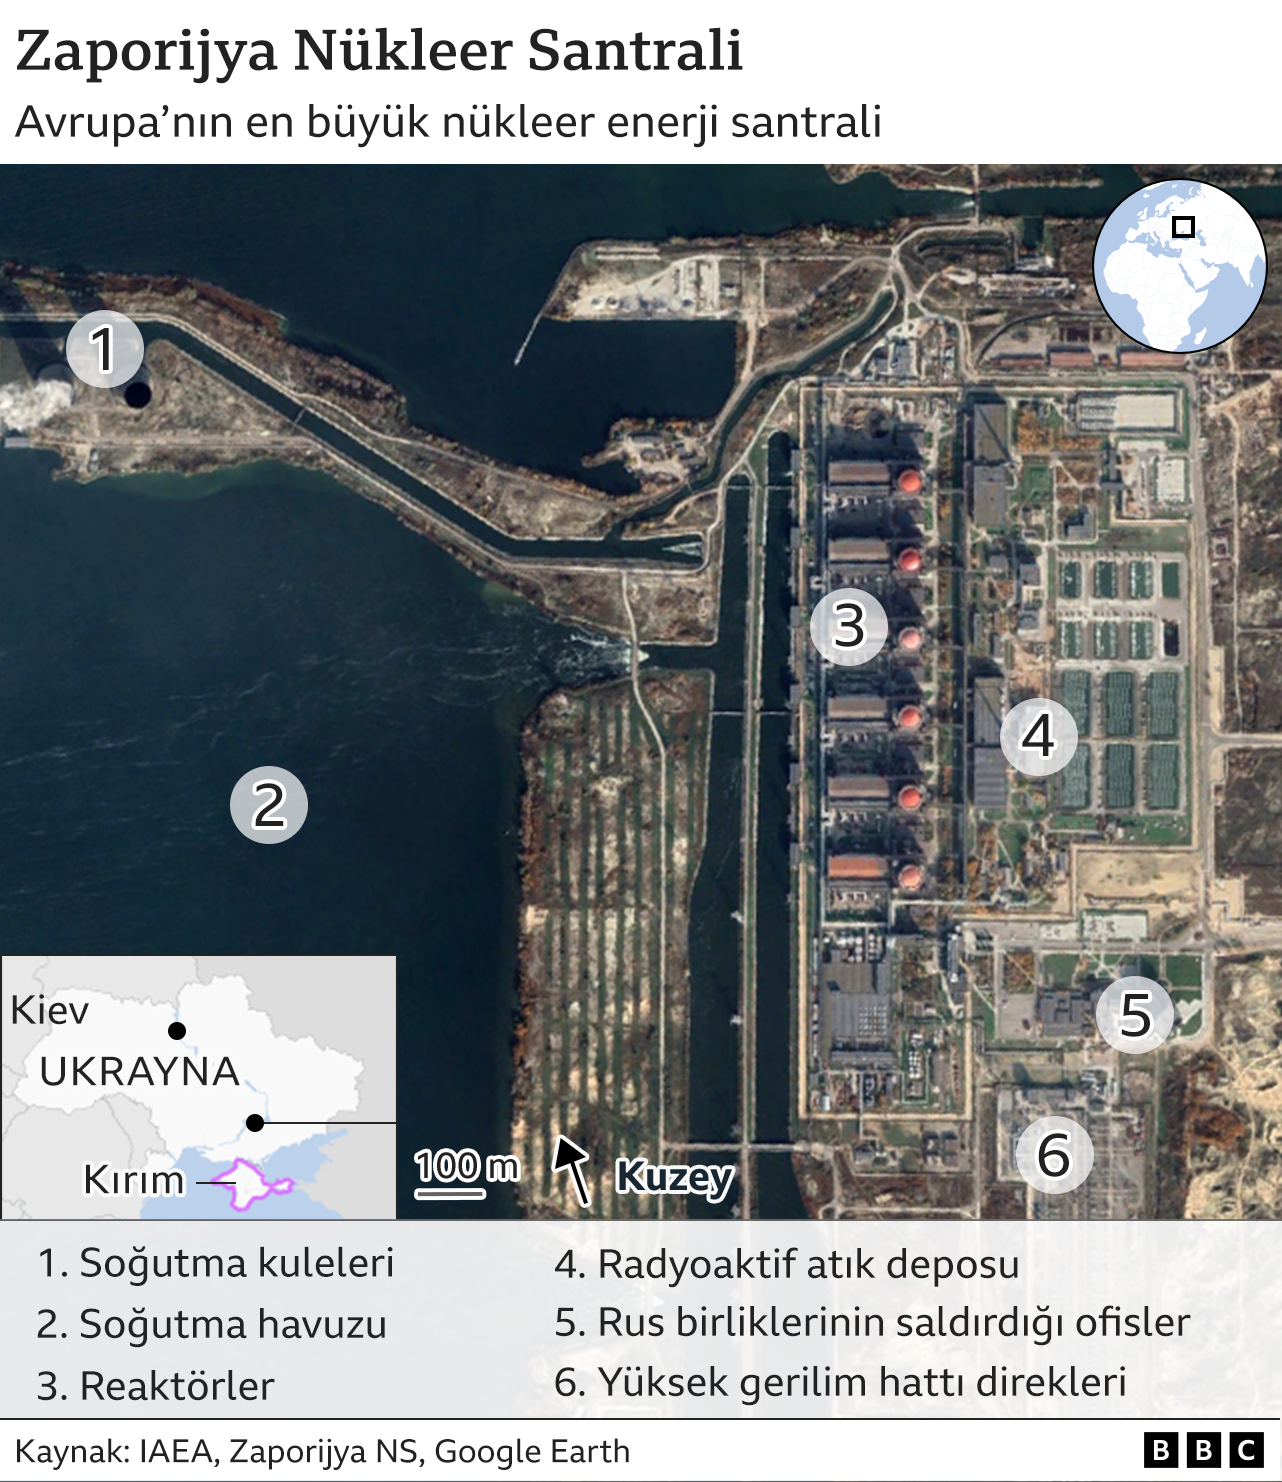 Rusya'nın Ukrayna'da nükleer santrale saldırısı ne kadar tehlike yarattı?